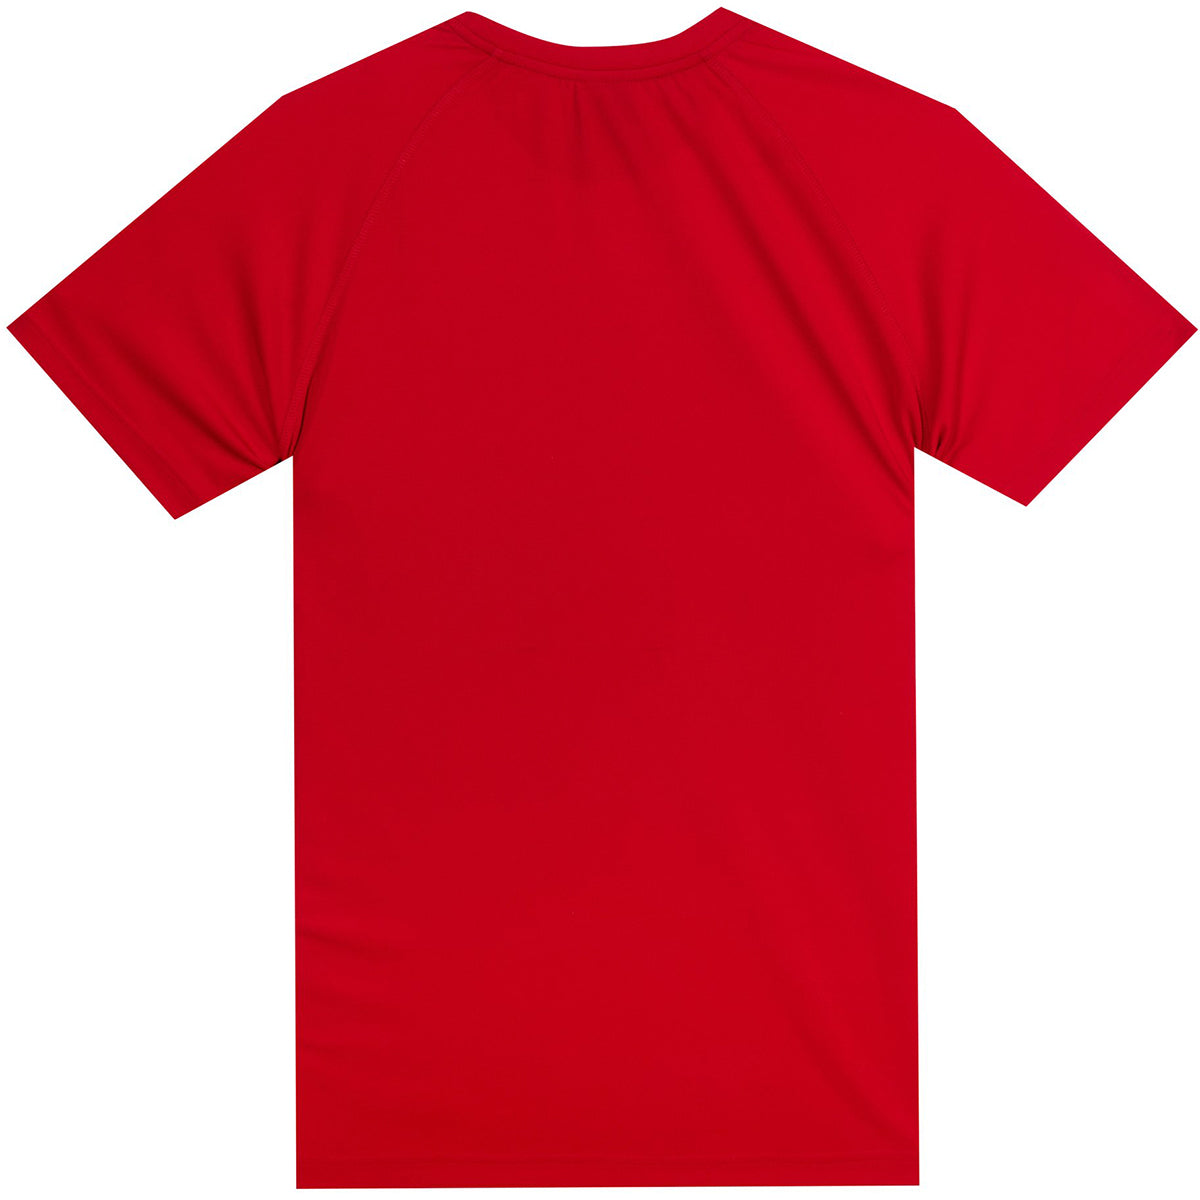 Tatami Fightwear Dry Fit T-Shirt - Red Tatami Fightwear